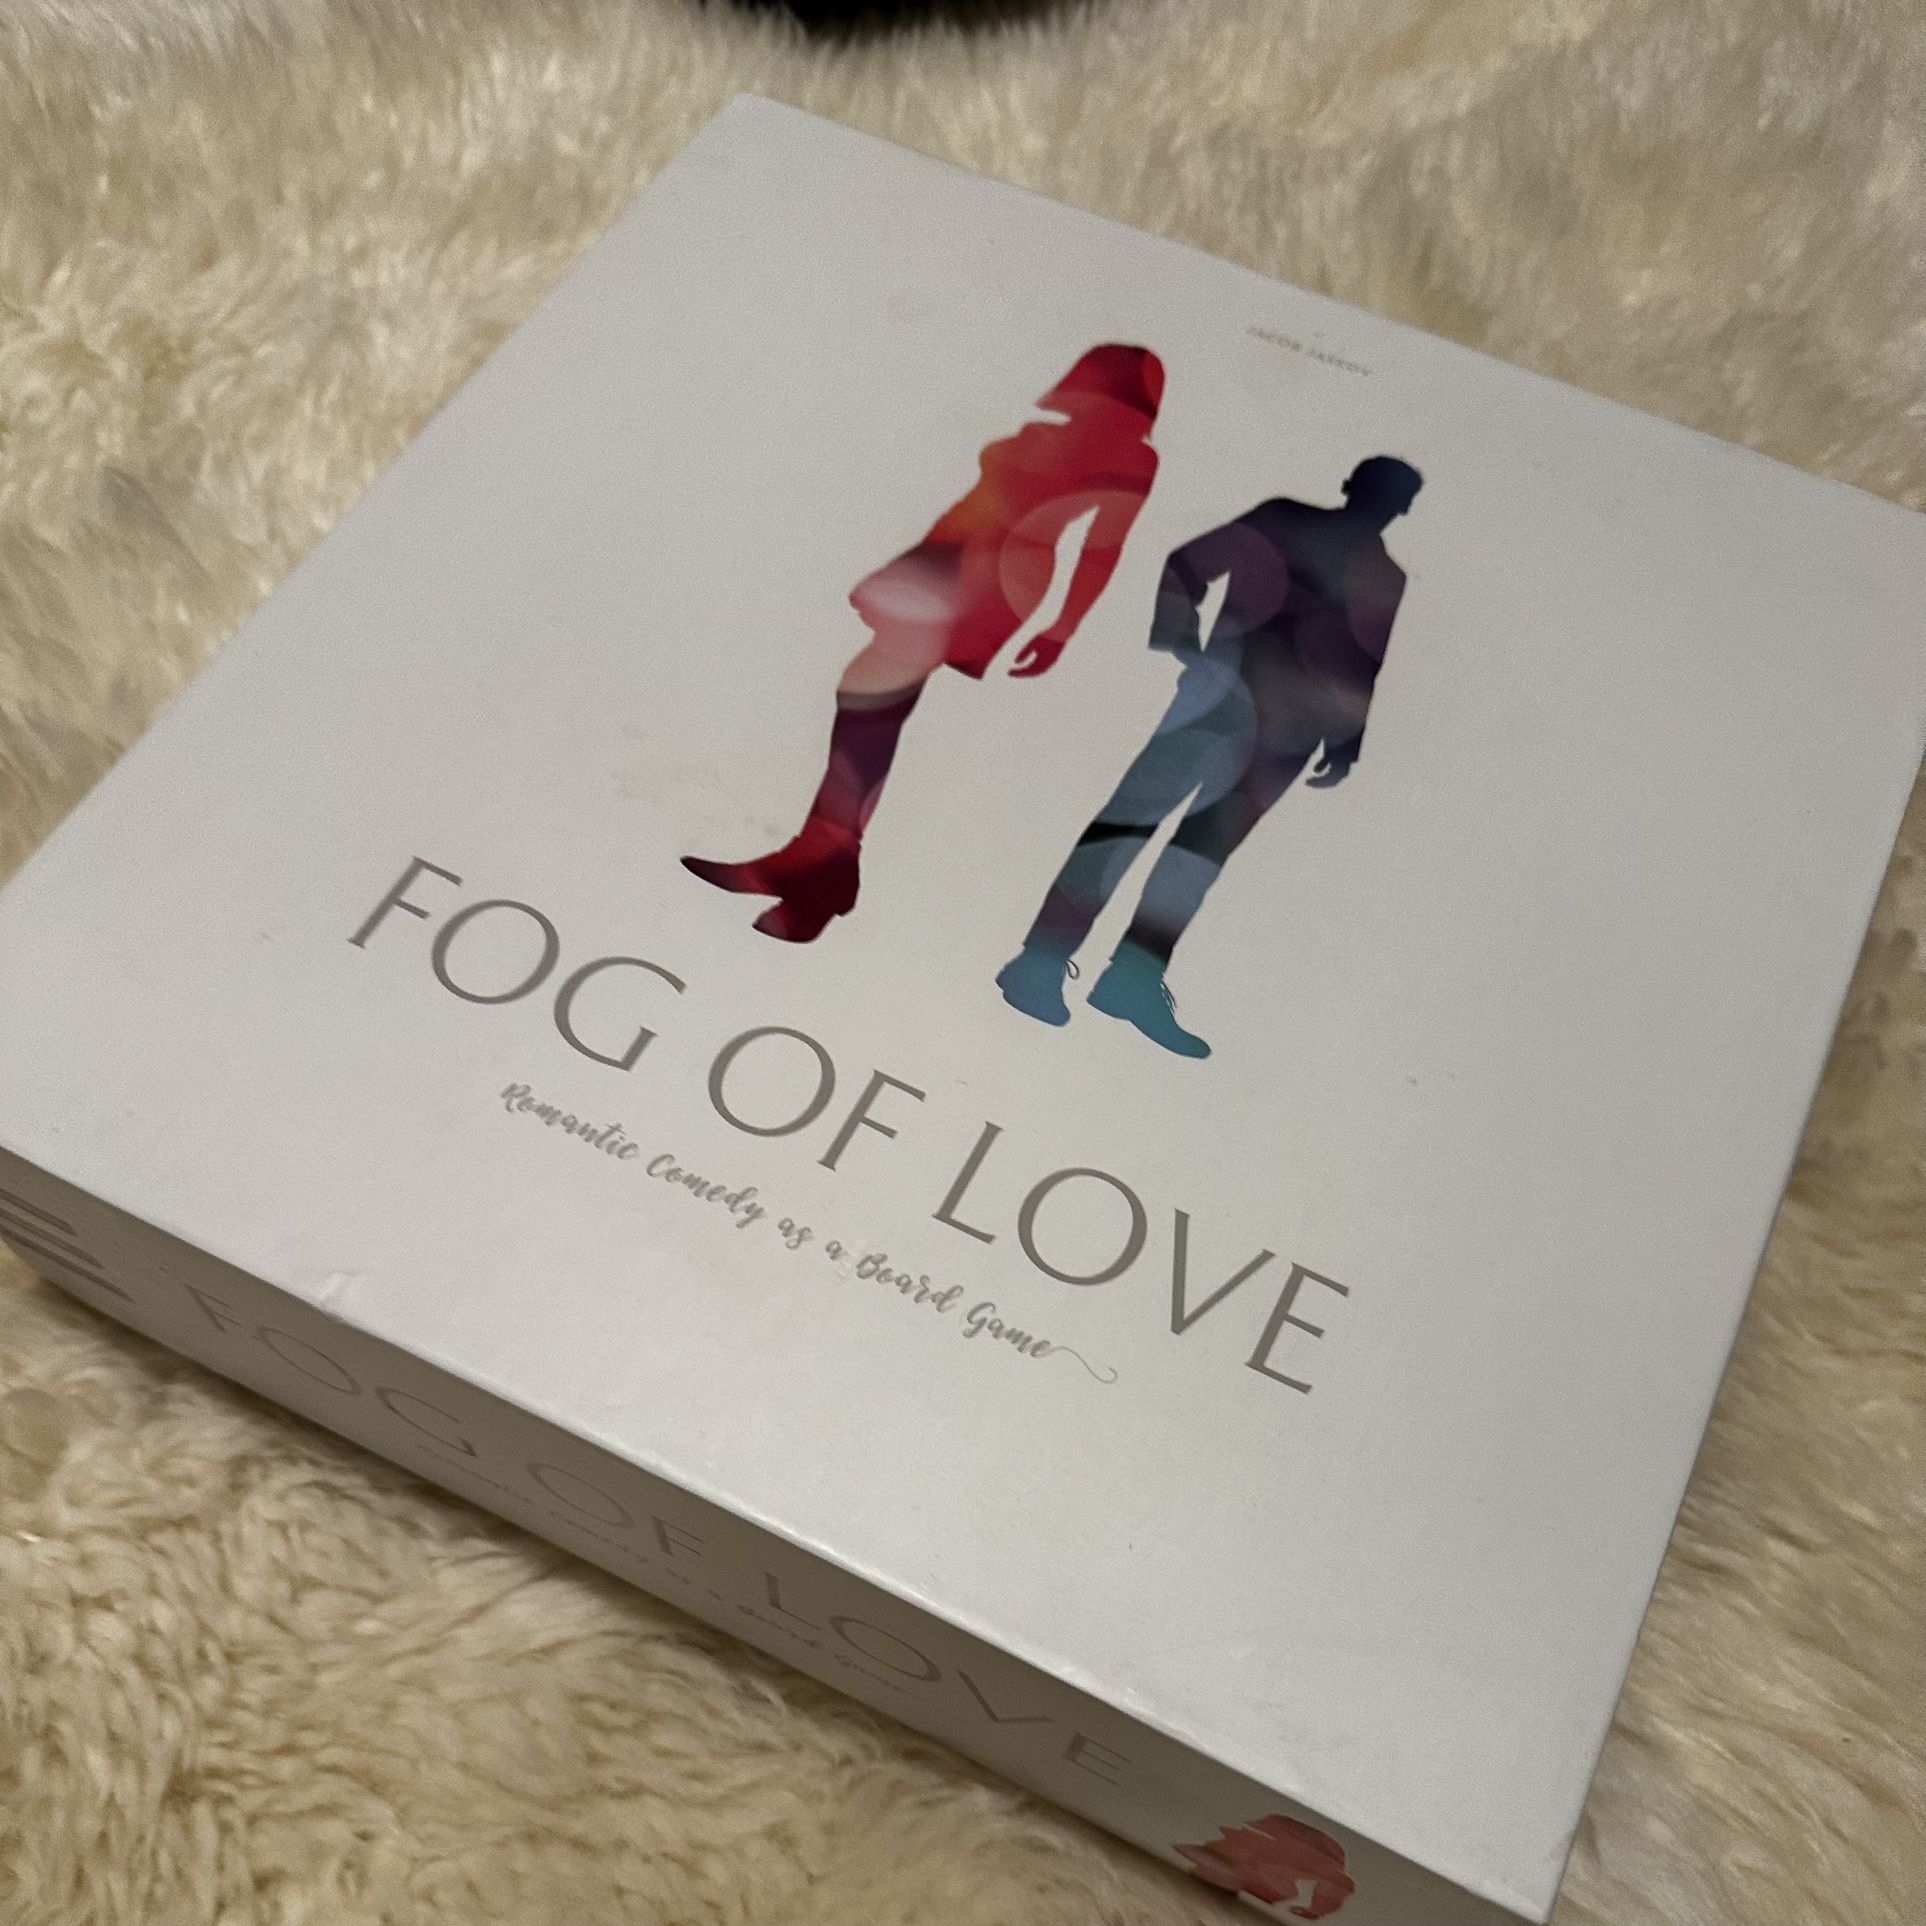 Romantic Comedy Board Game - Fog of Love